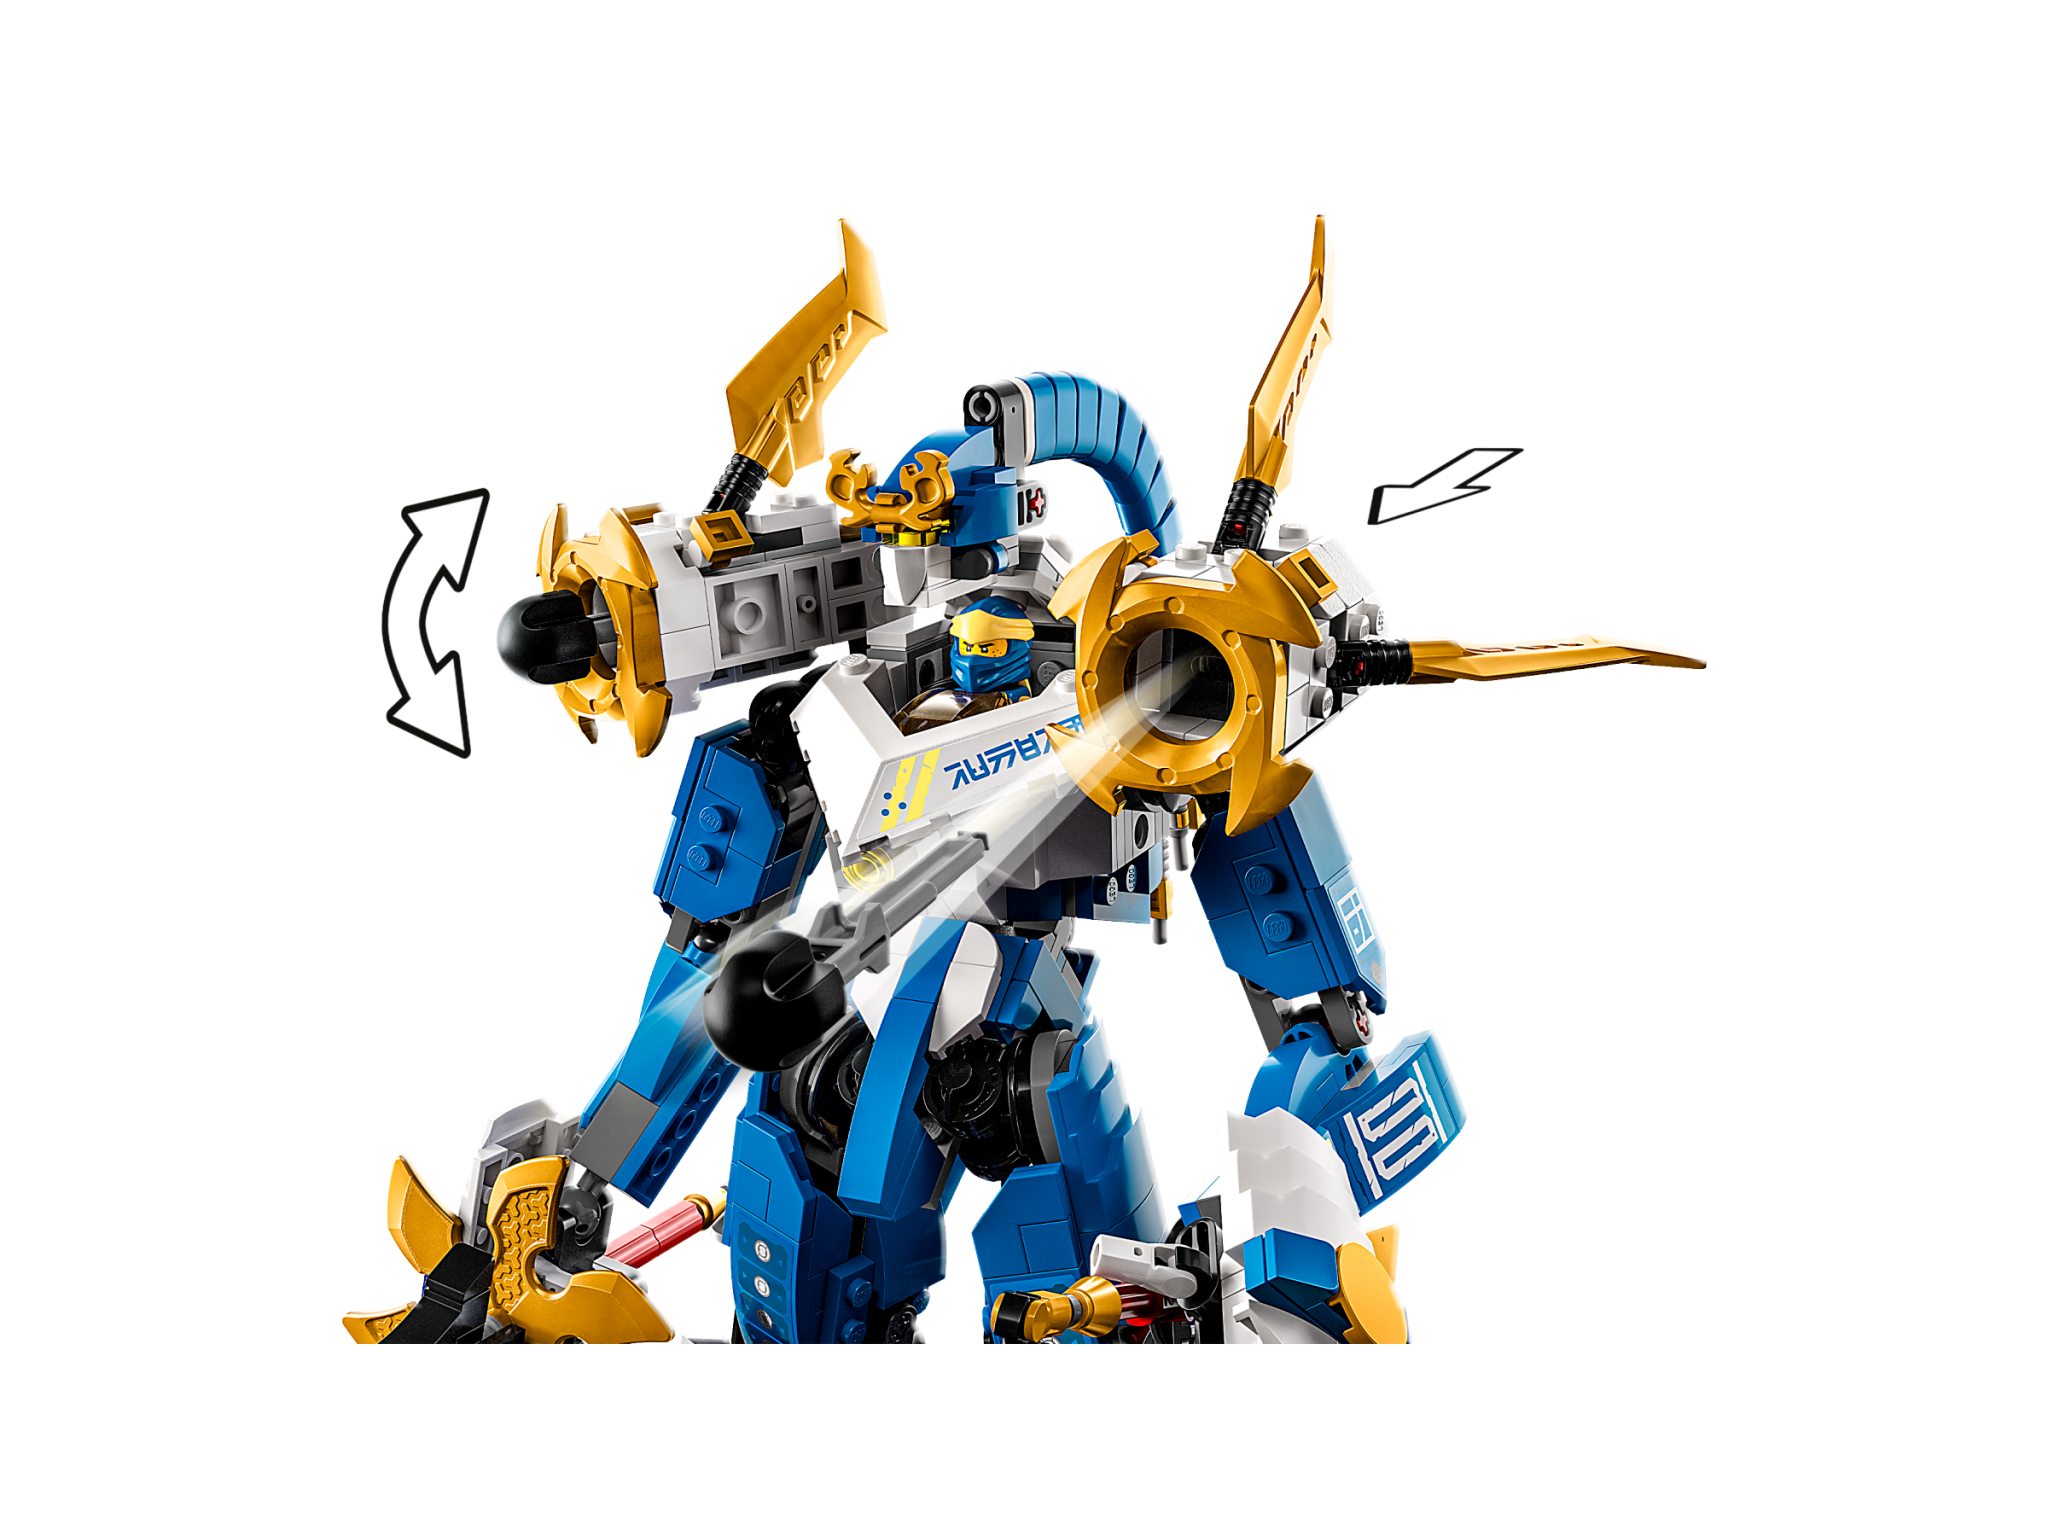 Lego Lego 71785 Ninjago - Le robot titan de Jay